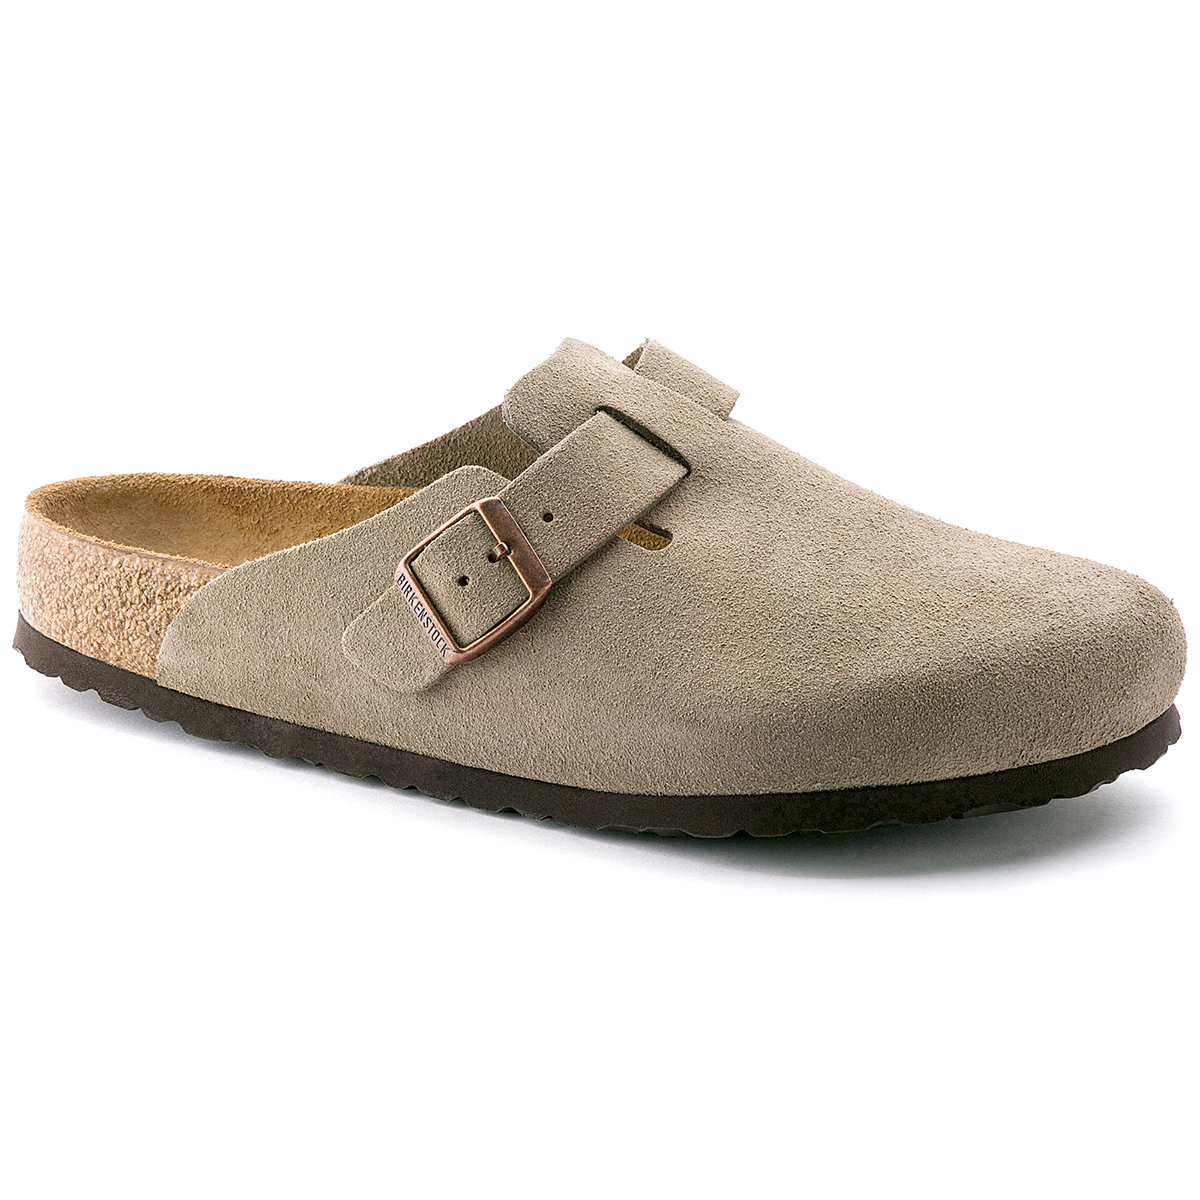 Birkenstock Women's Boston Soft Footbed Clogs - Size 41